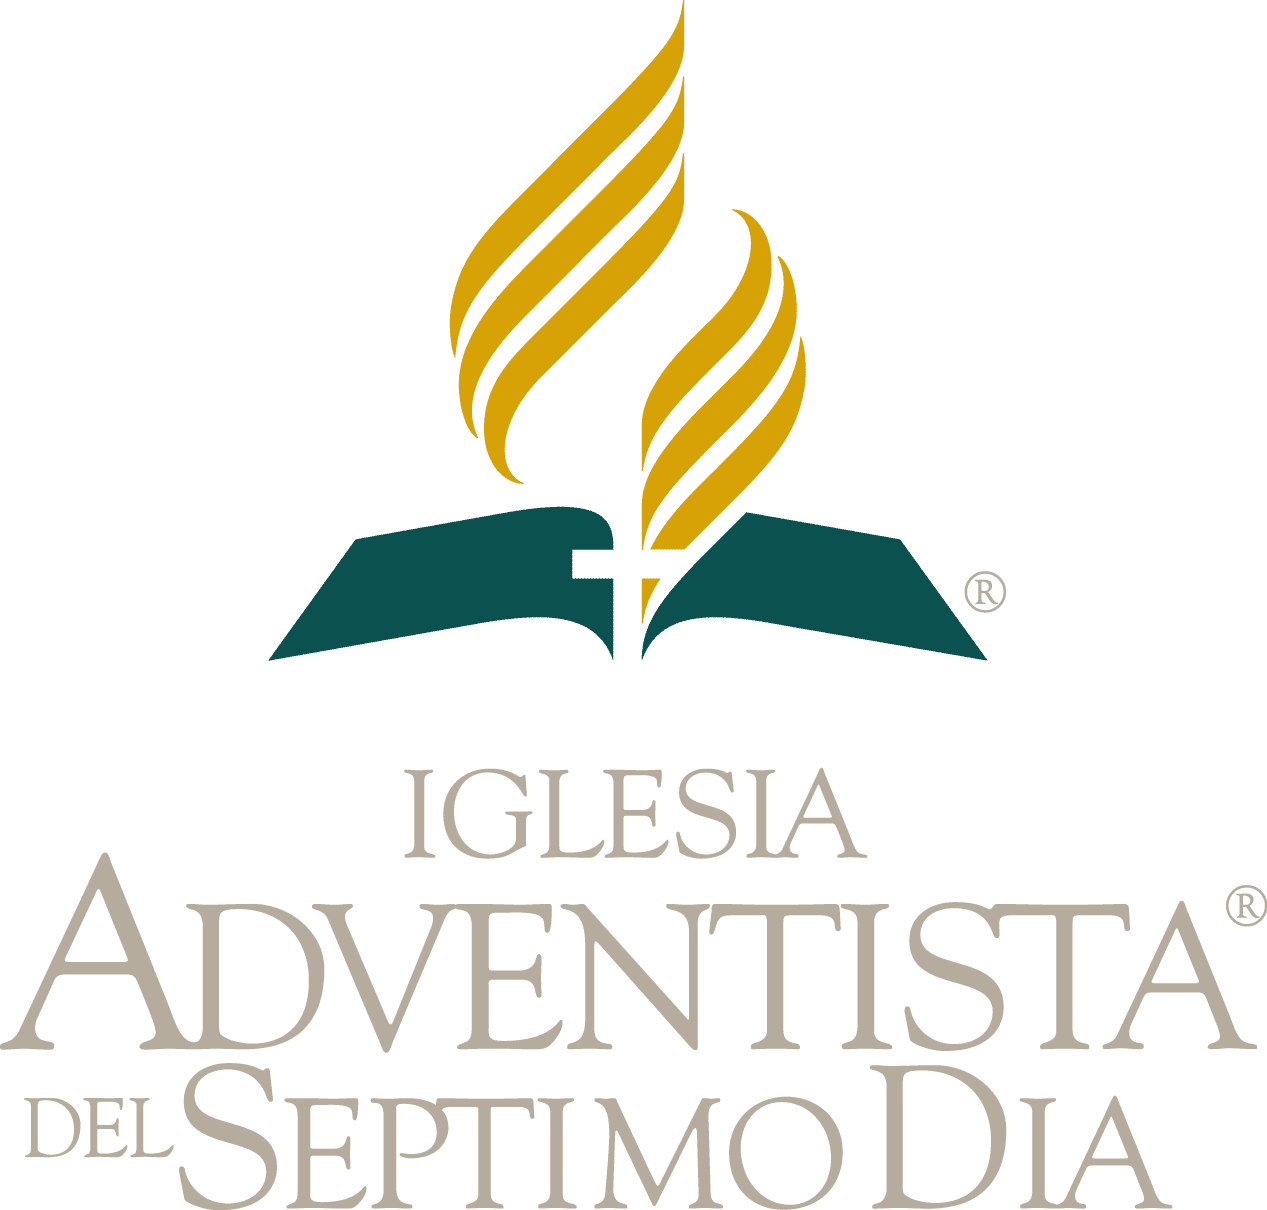 La Iglesia Adventista del Séptimo Día emitió un comunicado en relación al proceso judicial que involucra a algunos de sus líderes